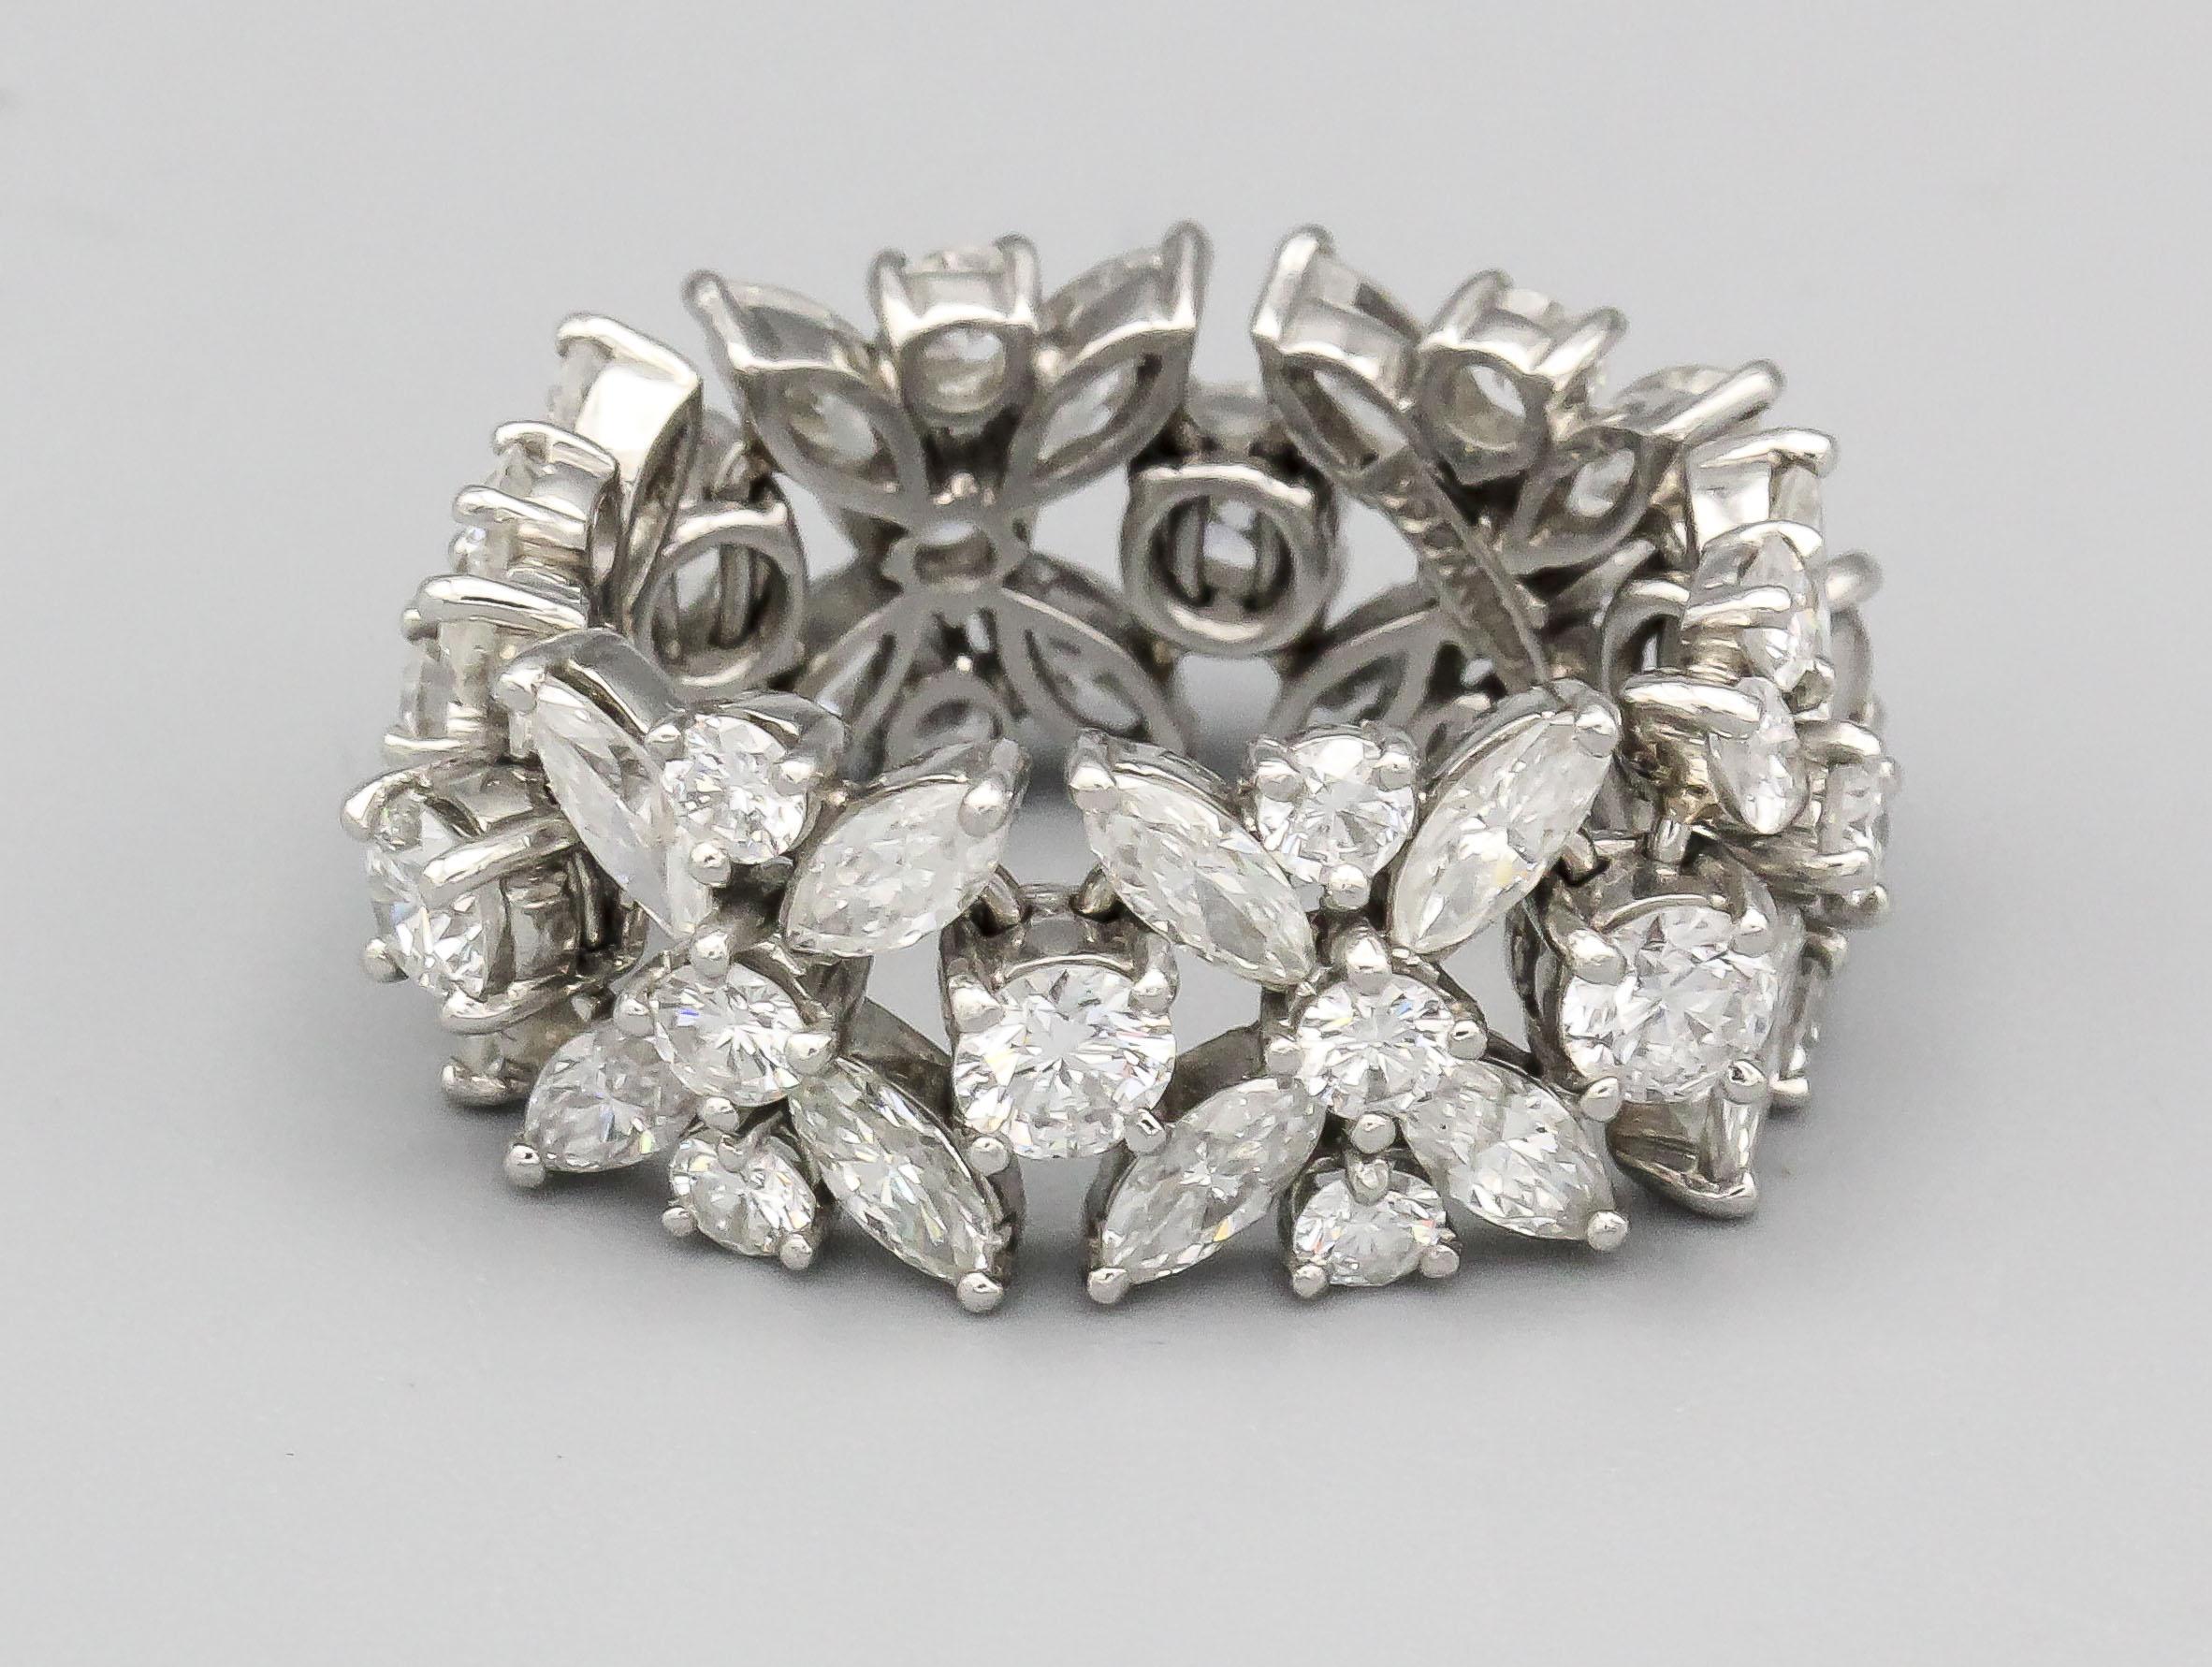 Eleg, l'élégance intemporelle de cet ensemble Tiffany & Co. Donald Claflin Flexible Diamond Platinum Eternity Band Ring, un trésor vintage des années 1970. Méticuleusement fabriquée, cette bague témoigne de l'héritage de Tiffany & Co. en matière de